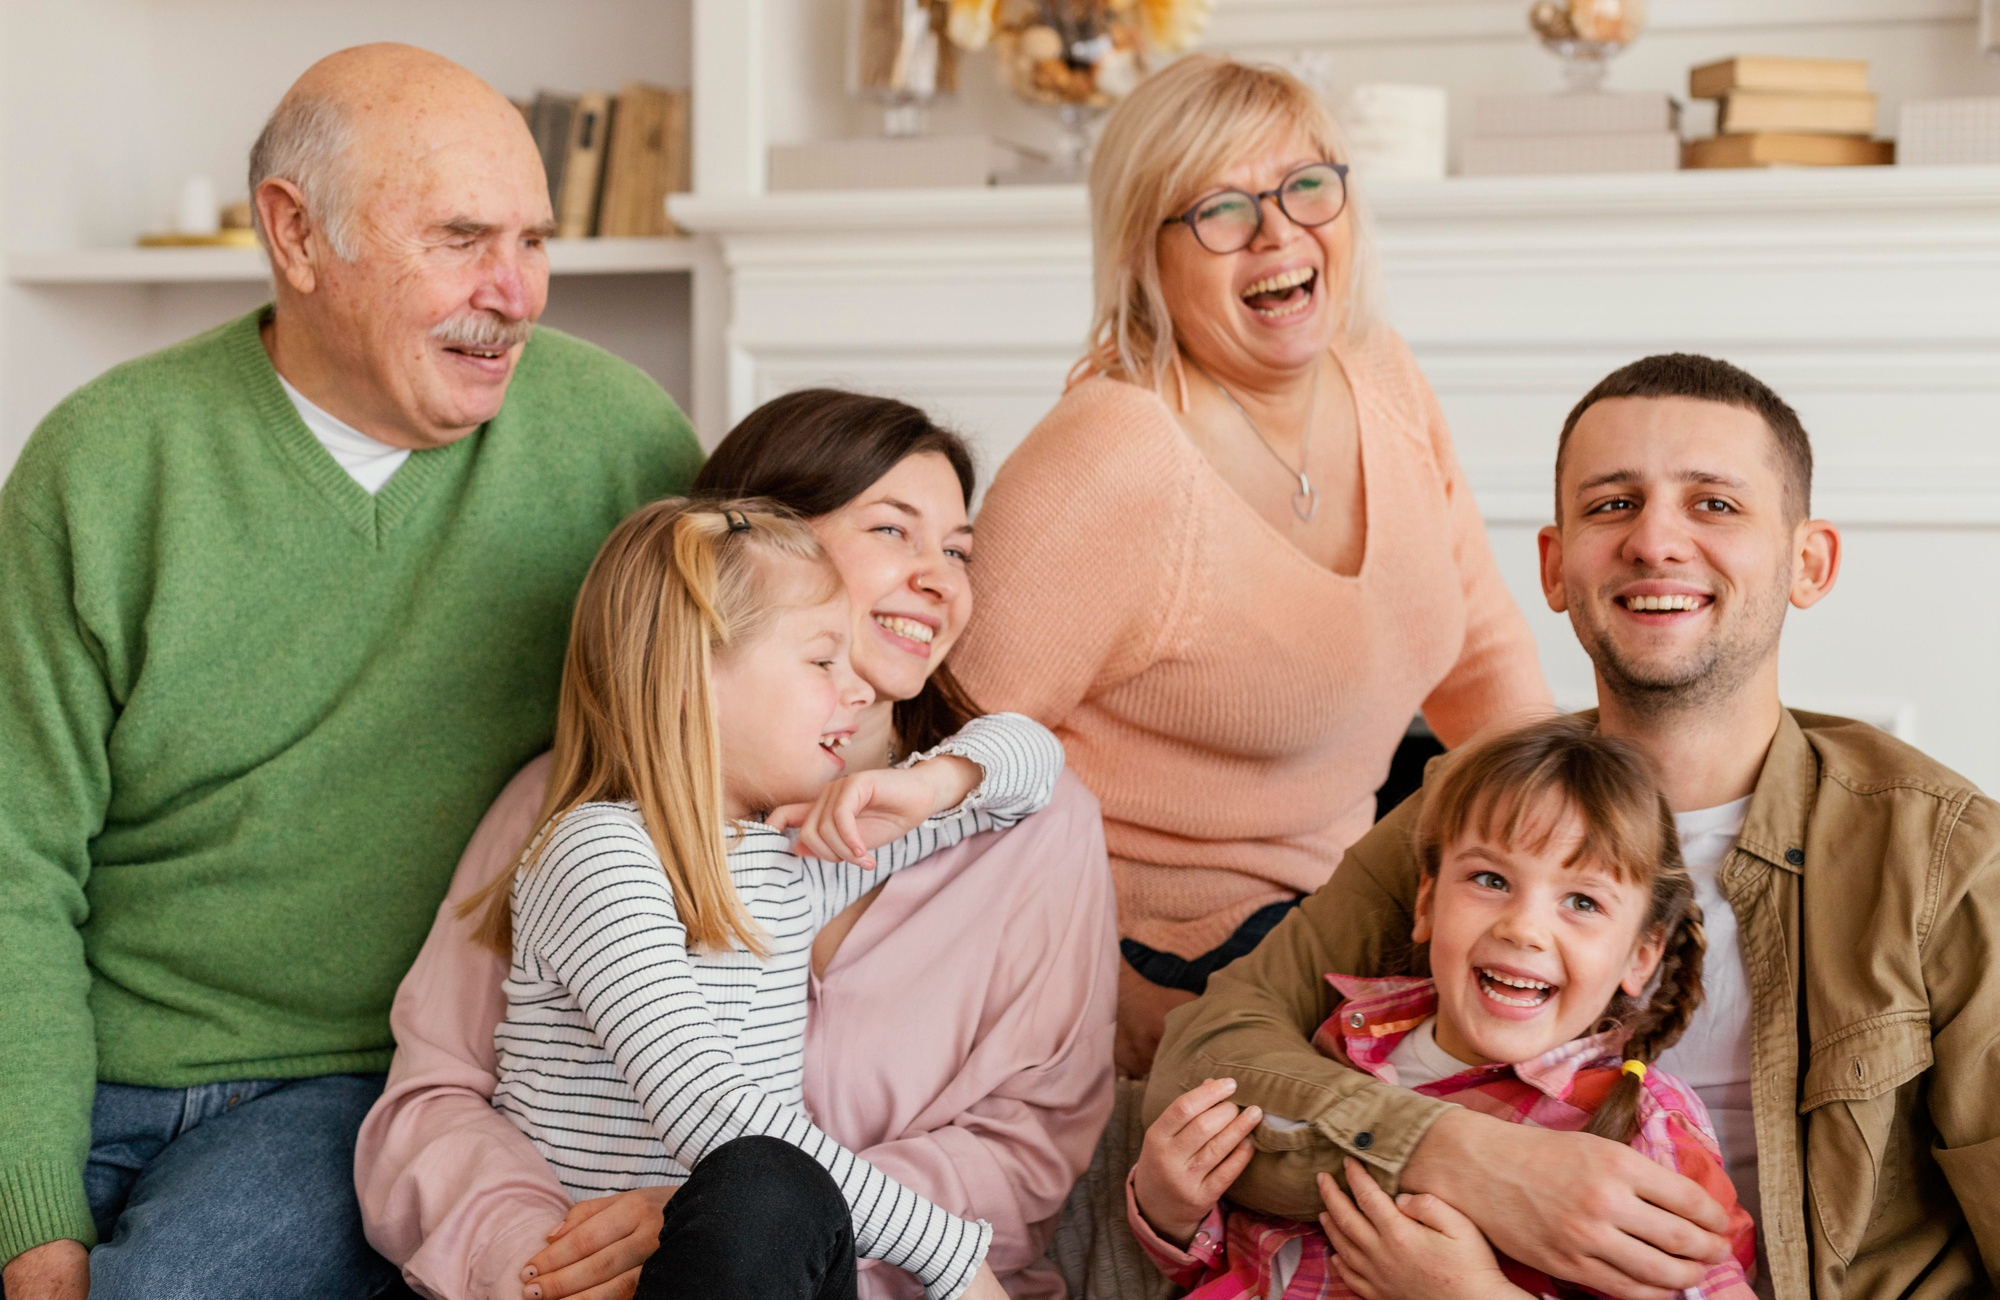 Eine glückliche Familie mit Großeltern, Erwachsenen, Kindern und Enkelkindern | Quelle: Freepik